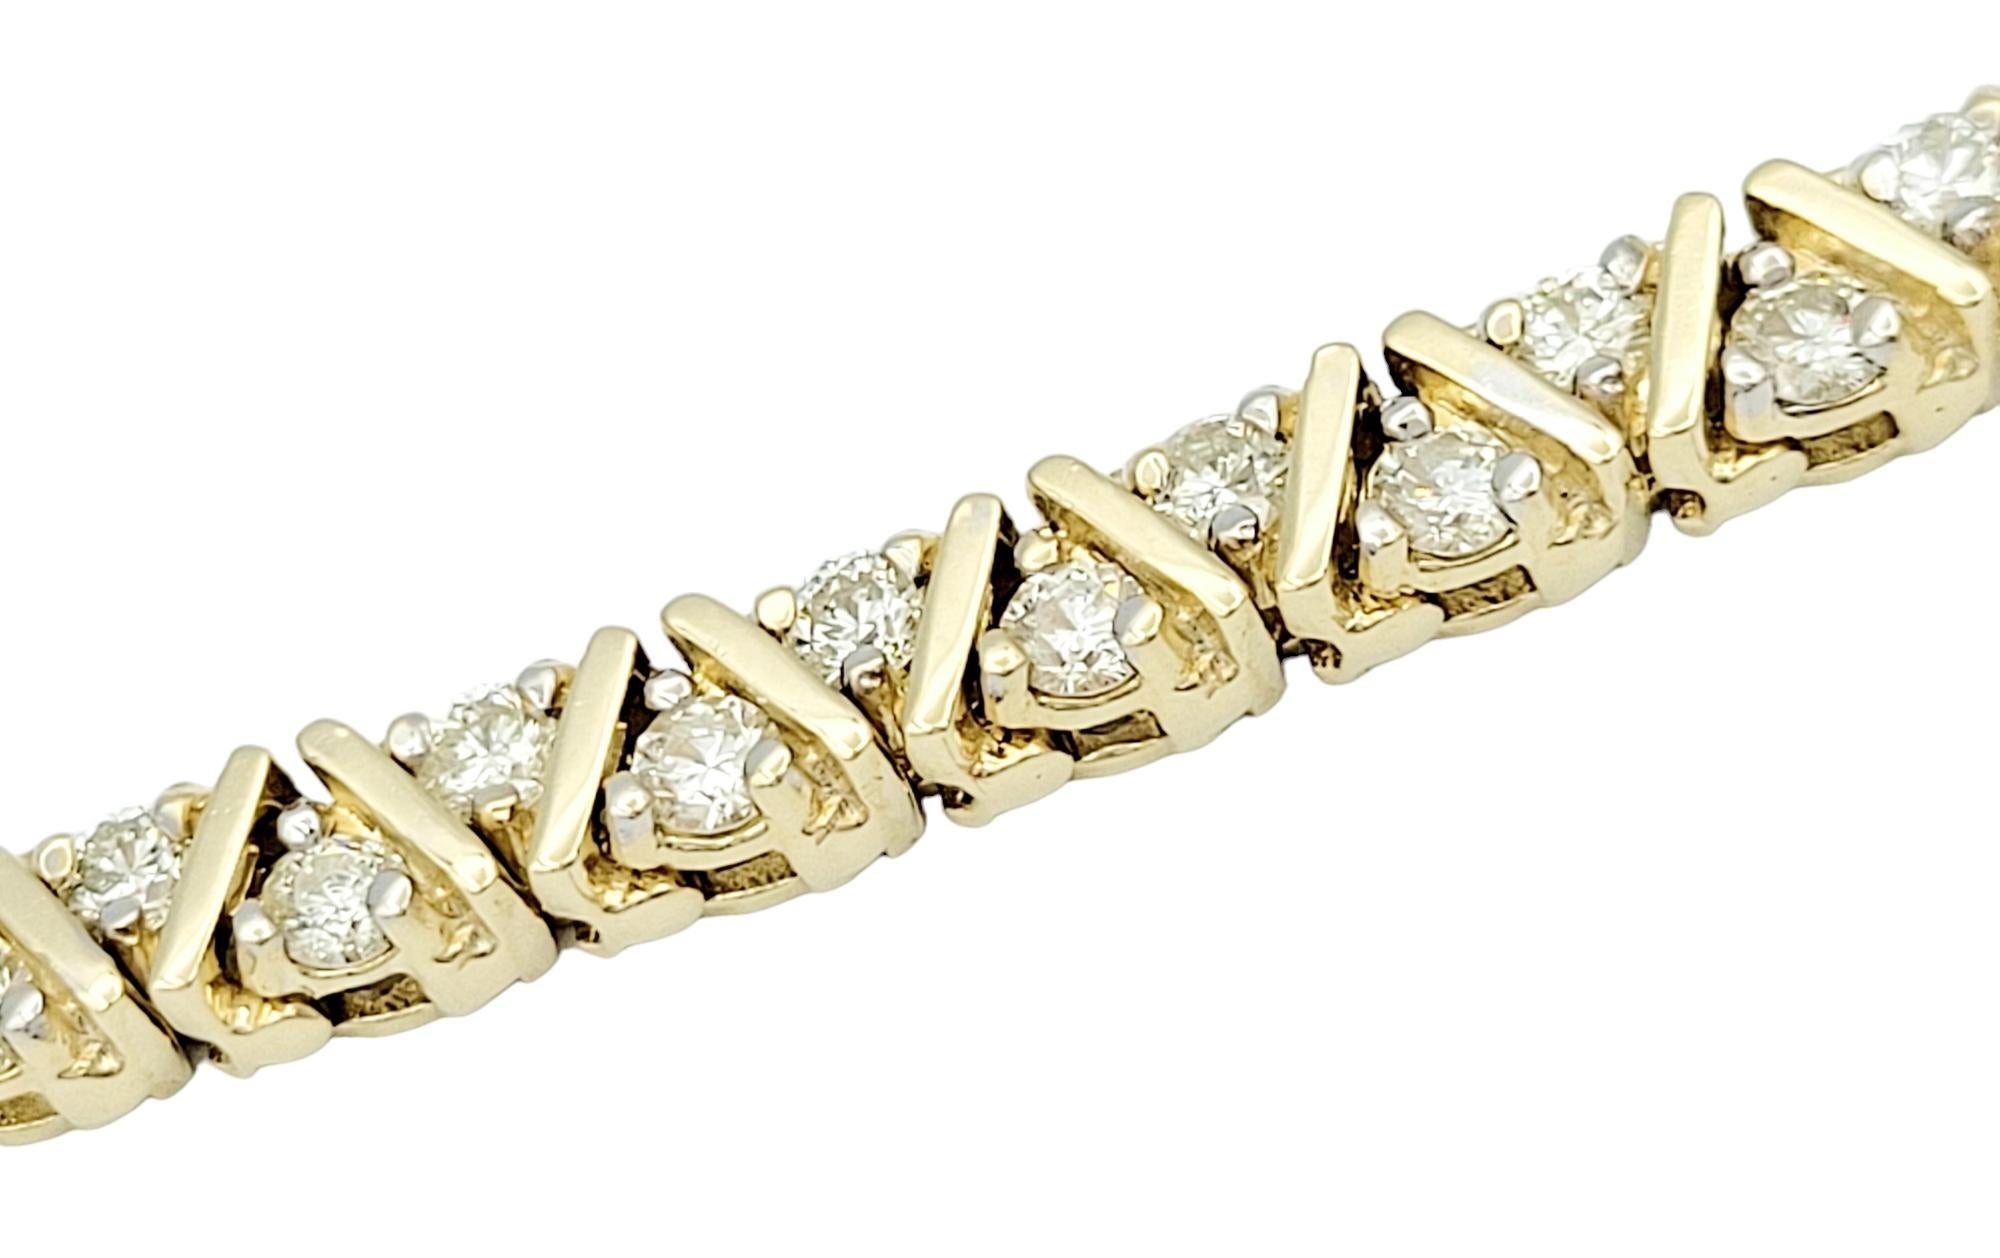 Ce bracelet en or jaune 14 carats dégage une élégance intemporelle grâce à son design géométrique sophistiqué. Le bracelet présente des diamants sertis dans des éléments triangulaires en or, créant un équilibre harmonieux entre simplicité et luxe.